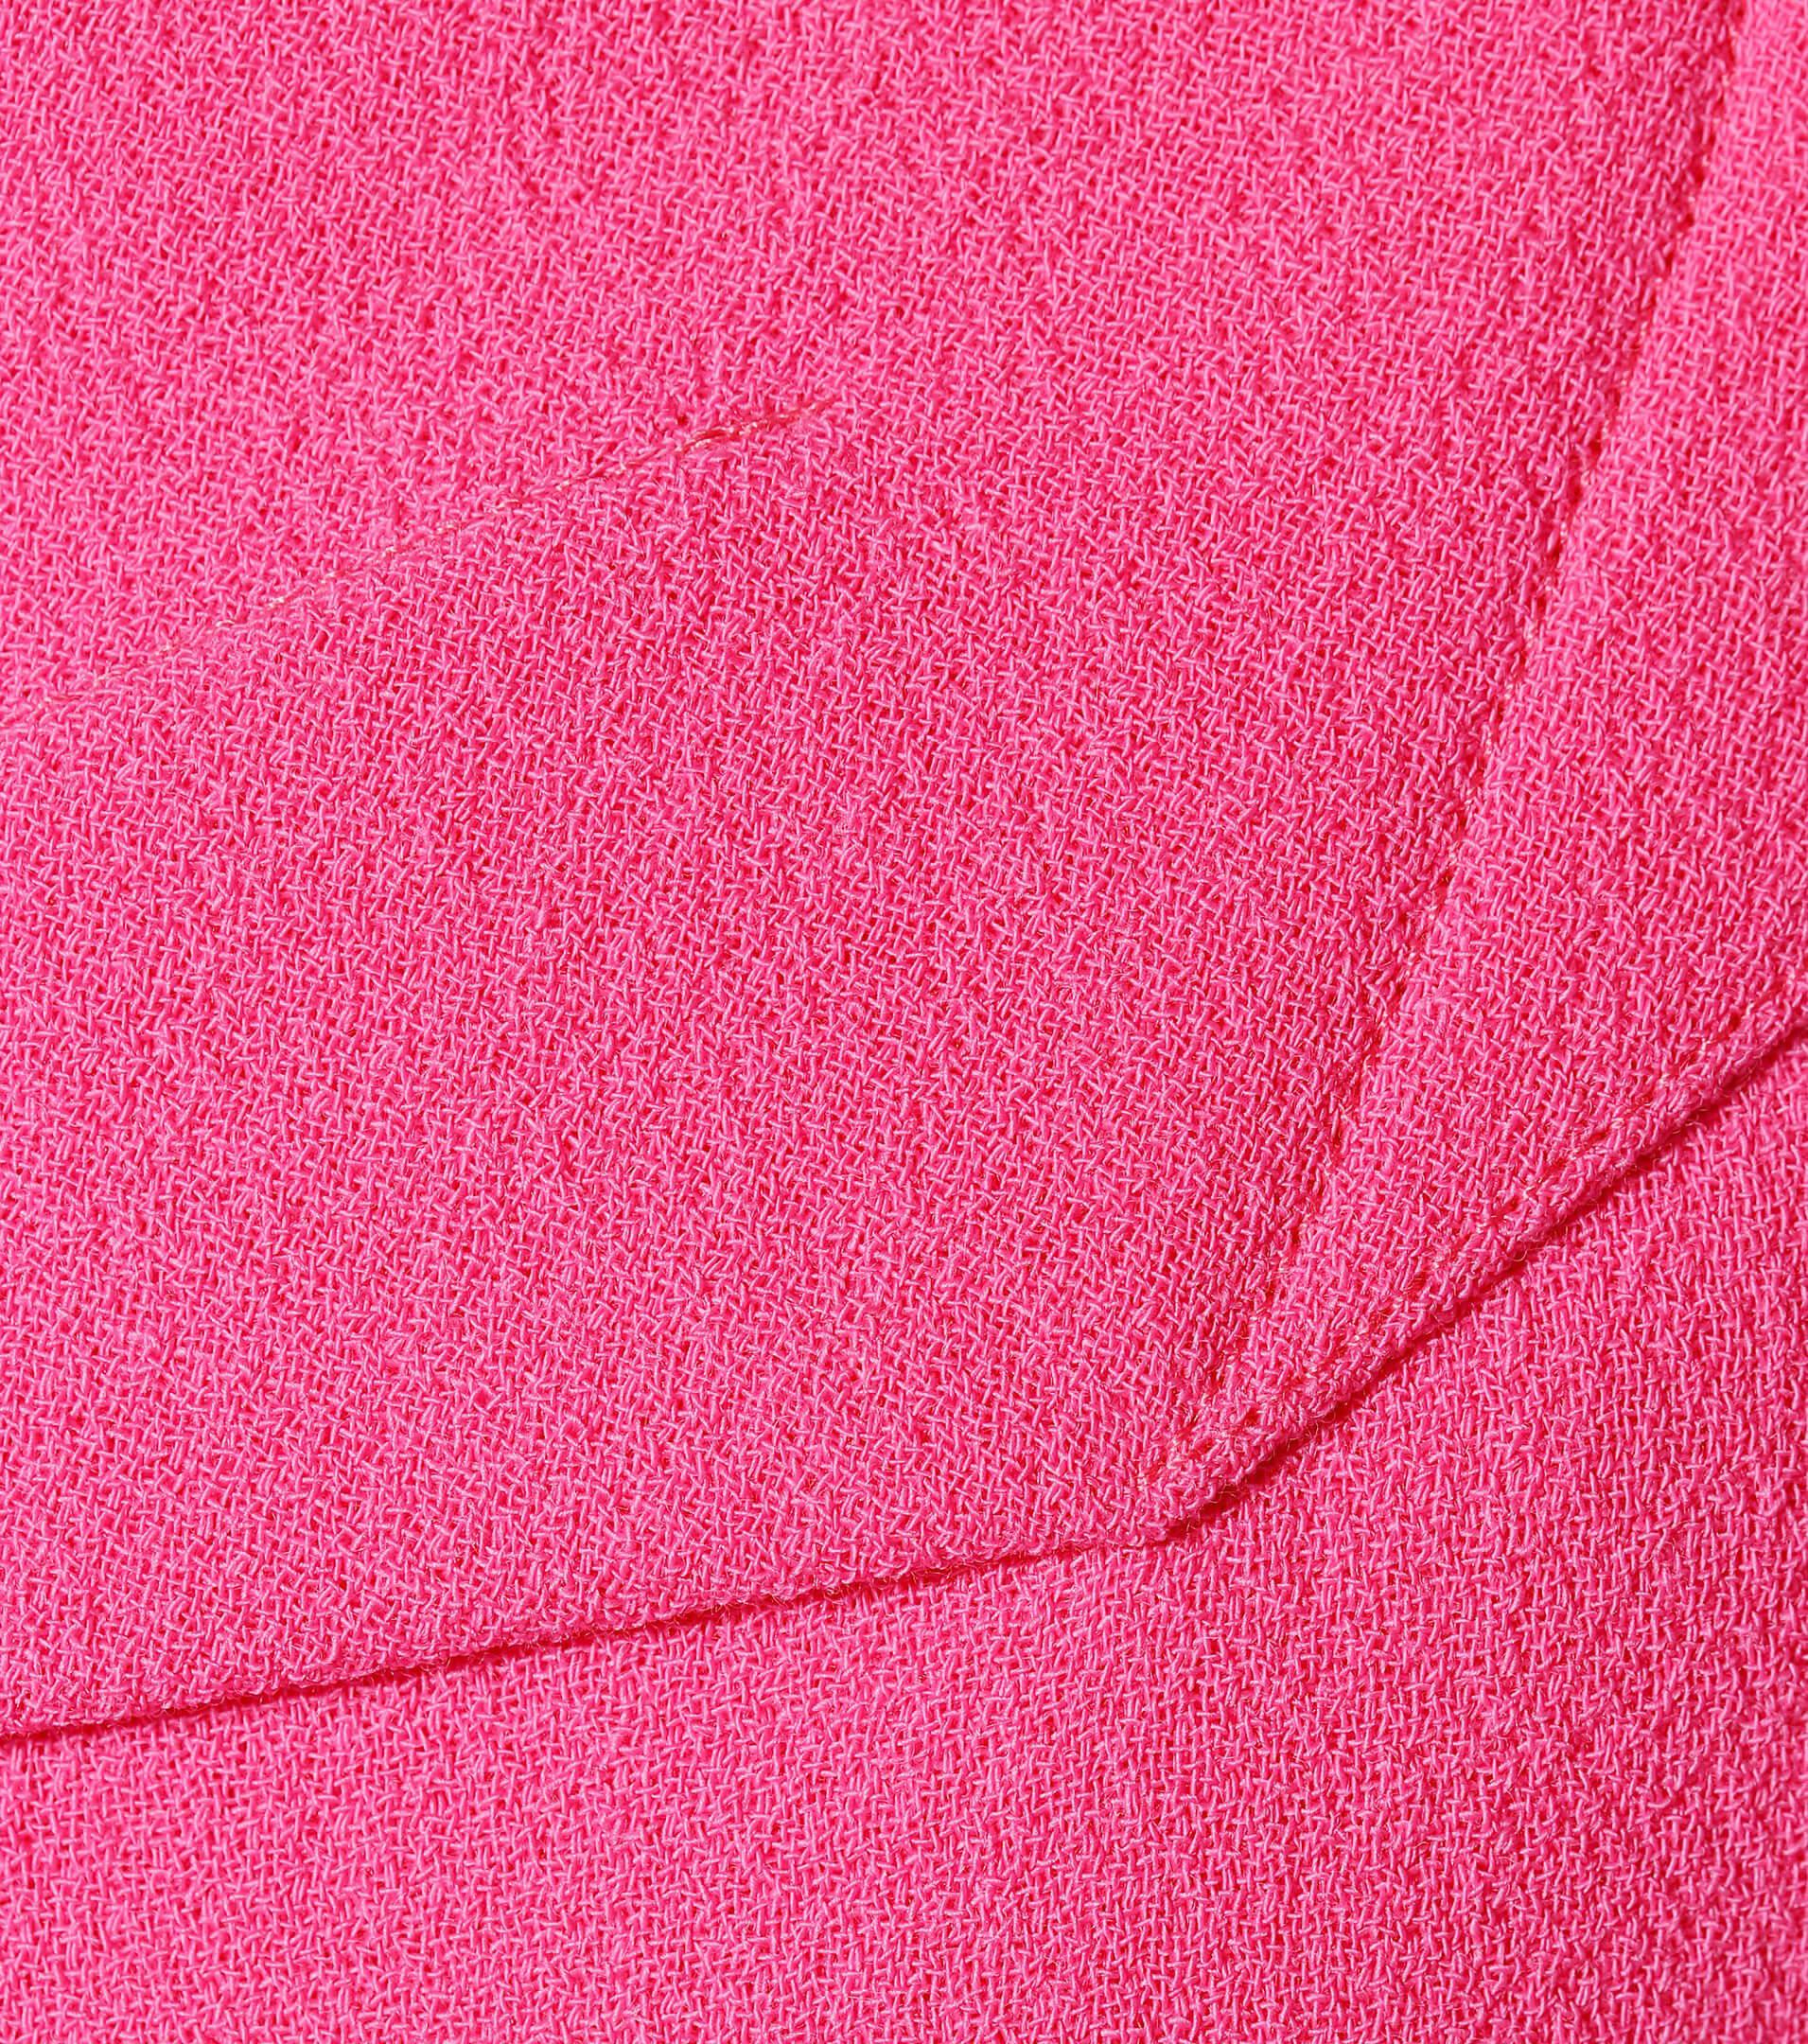 Шерстяной креп 004-2016, цвет Розовый, фото 2